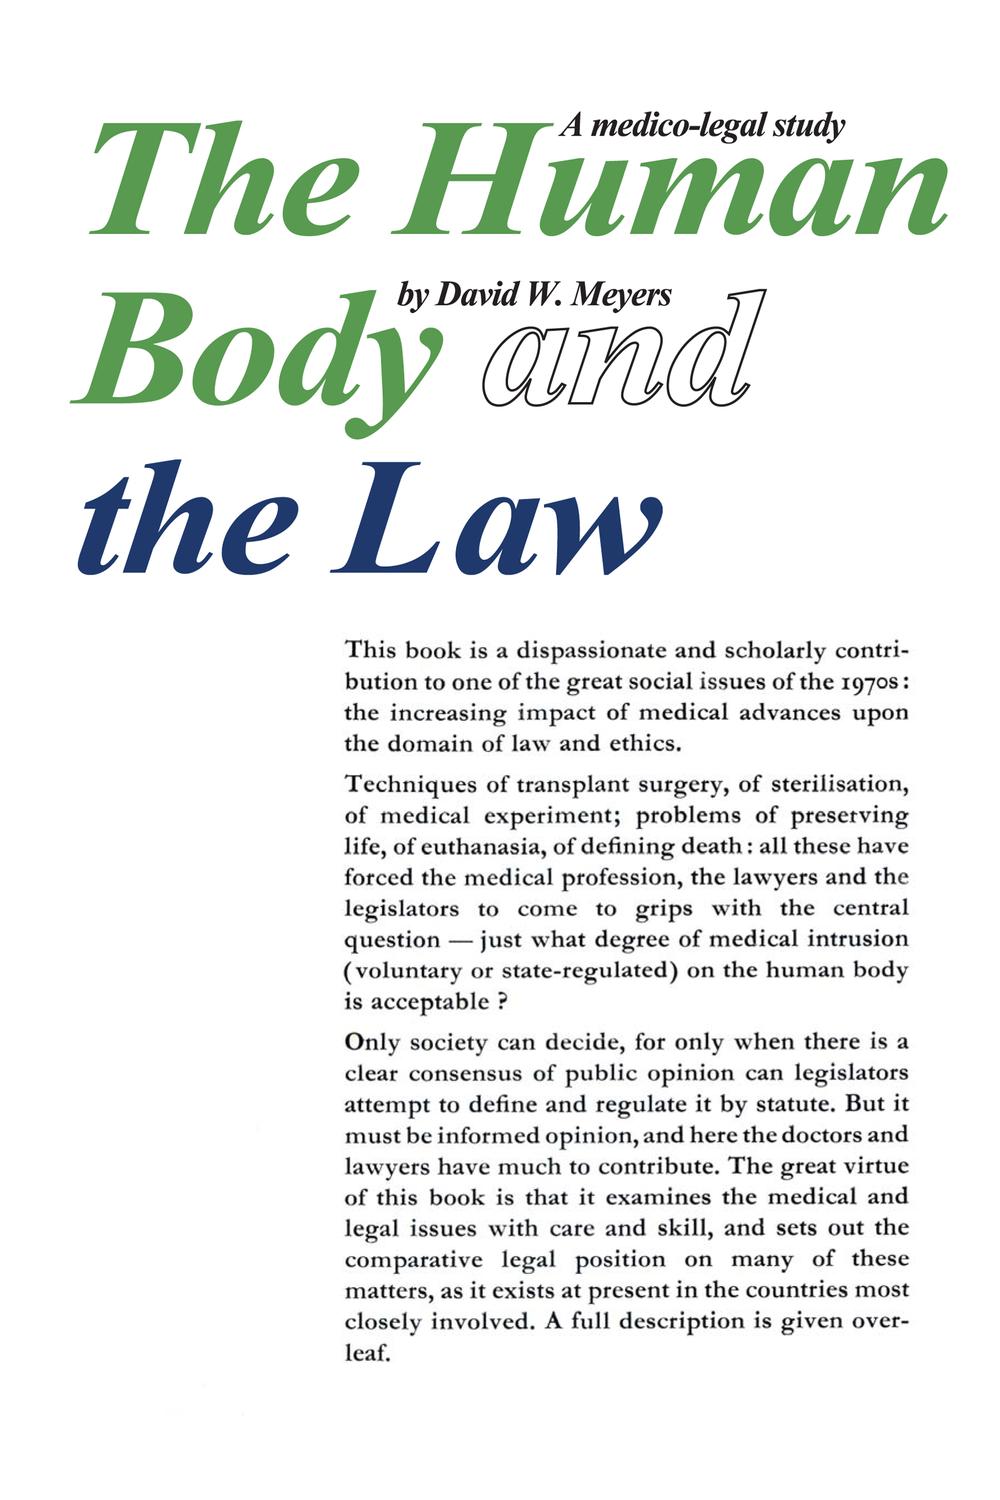 Human Body and the Law - Robert Maynard Hutchins